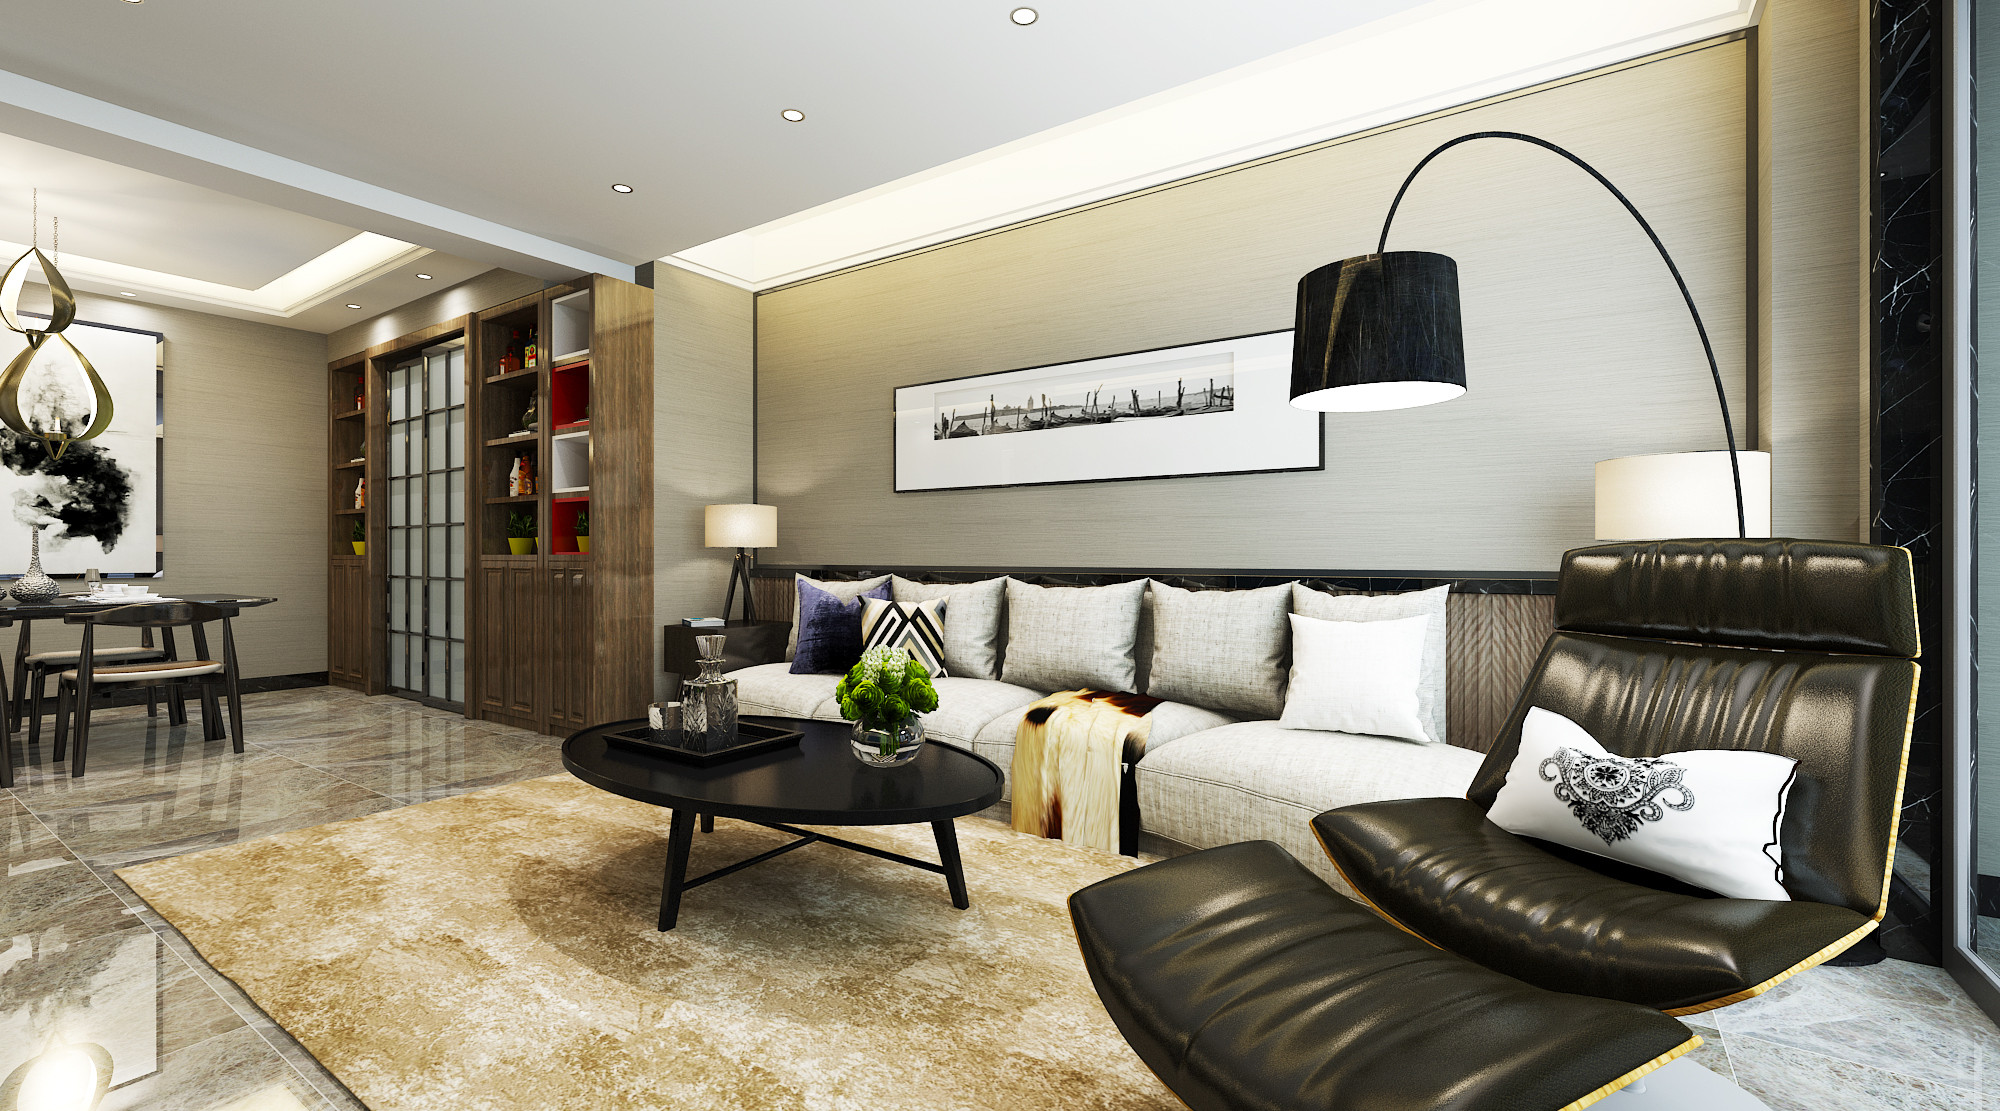 10-15万装修,二居室装修,70平米装修,客厅,沙发背景墙,现代简约风格,沙发,黑白